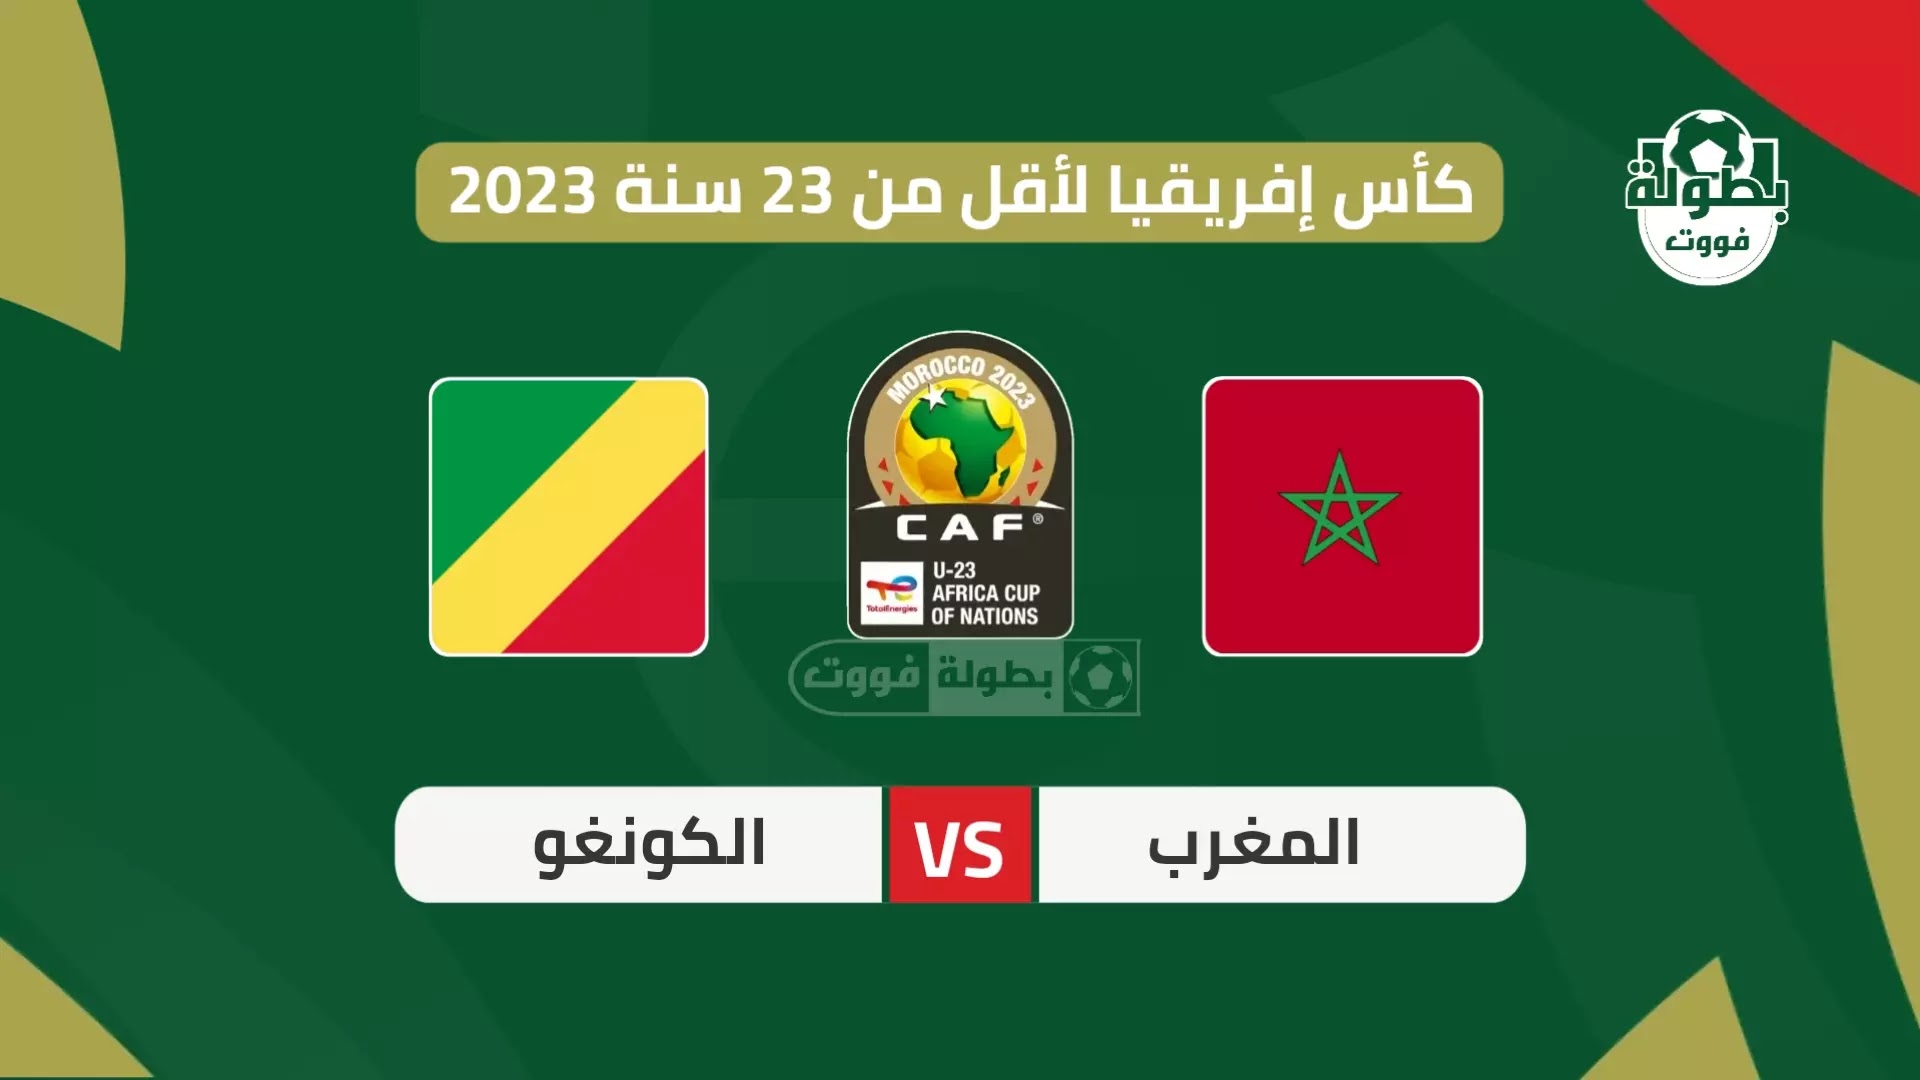 موعد مباراة المنتخب الأولمبي المغربي القادمة ضد الكونغو والقنوات الناقلة 2023